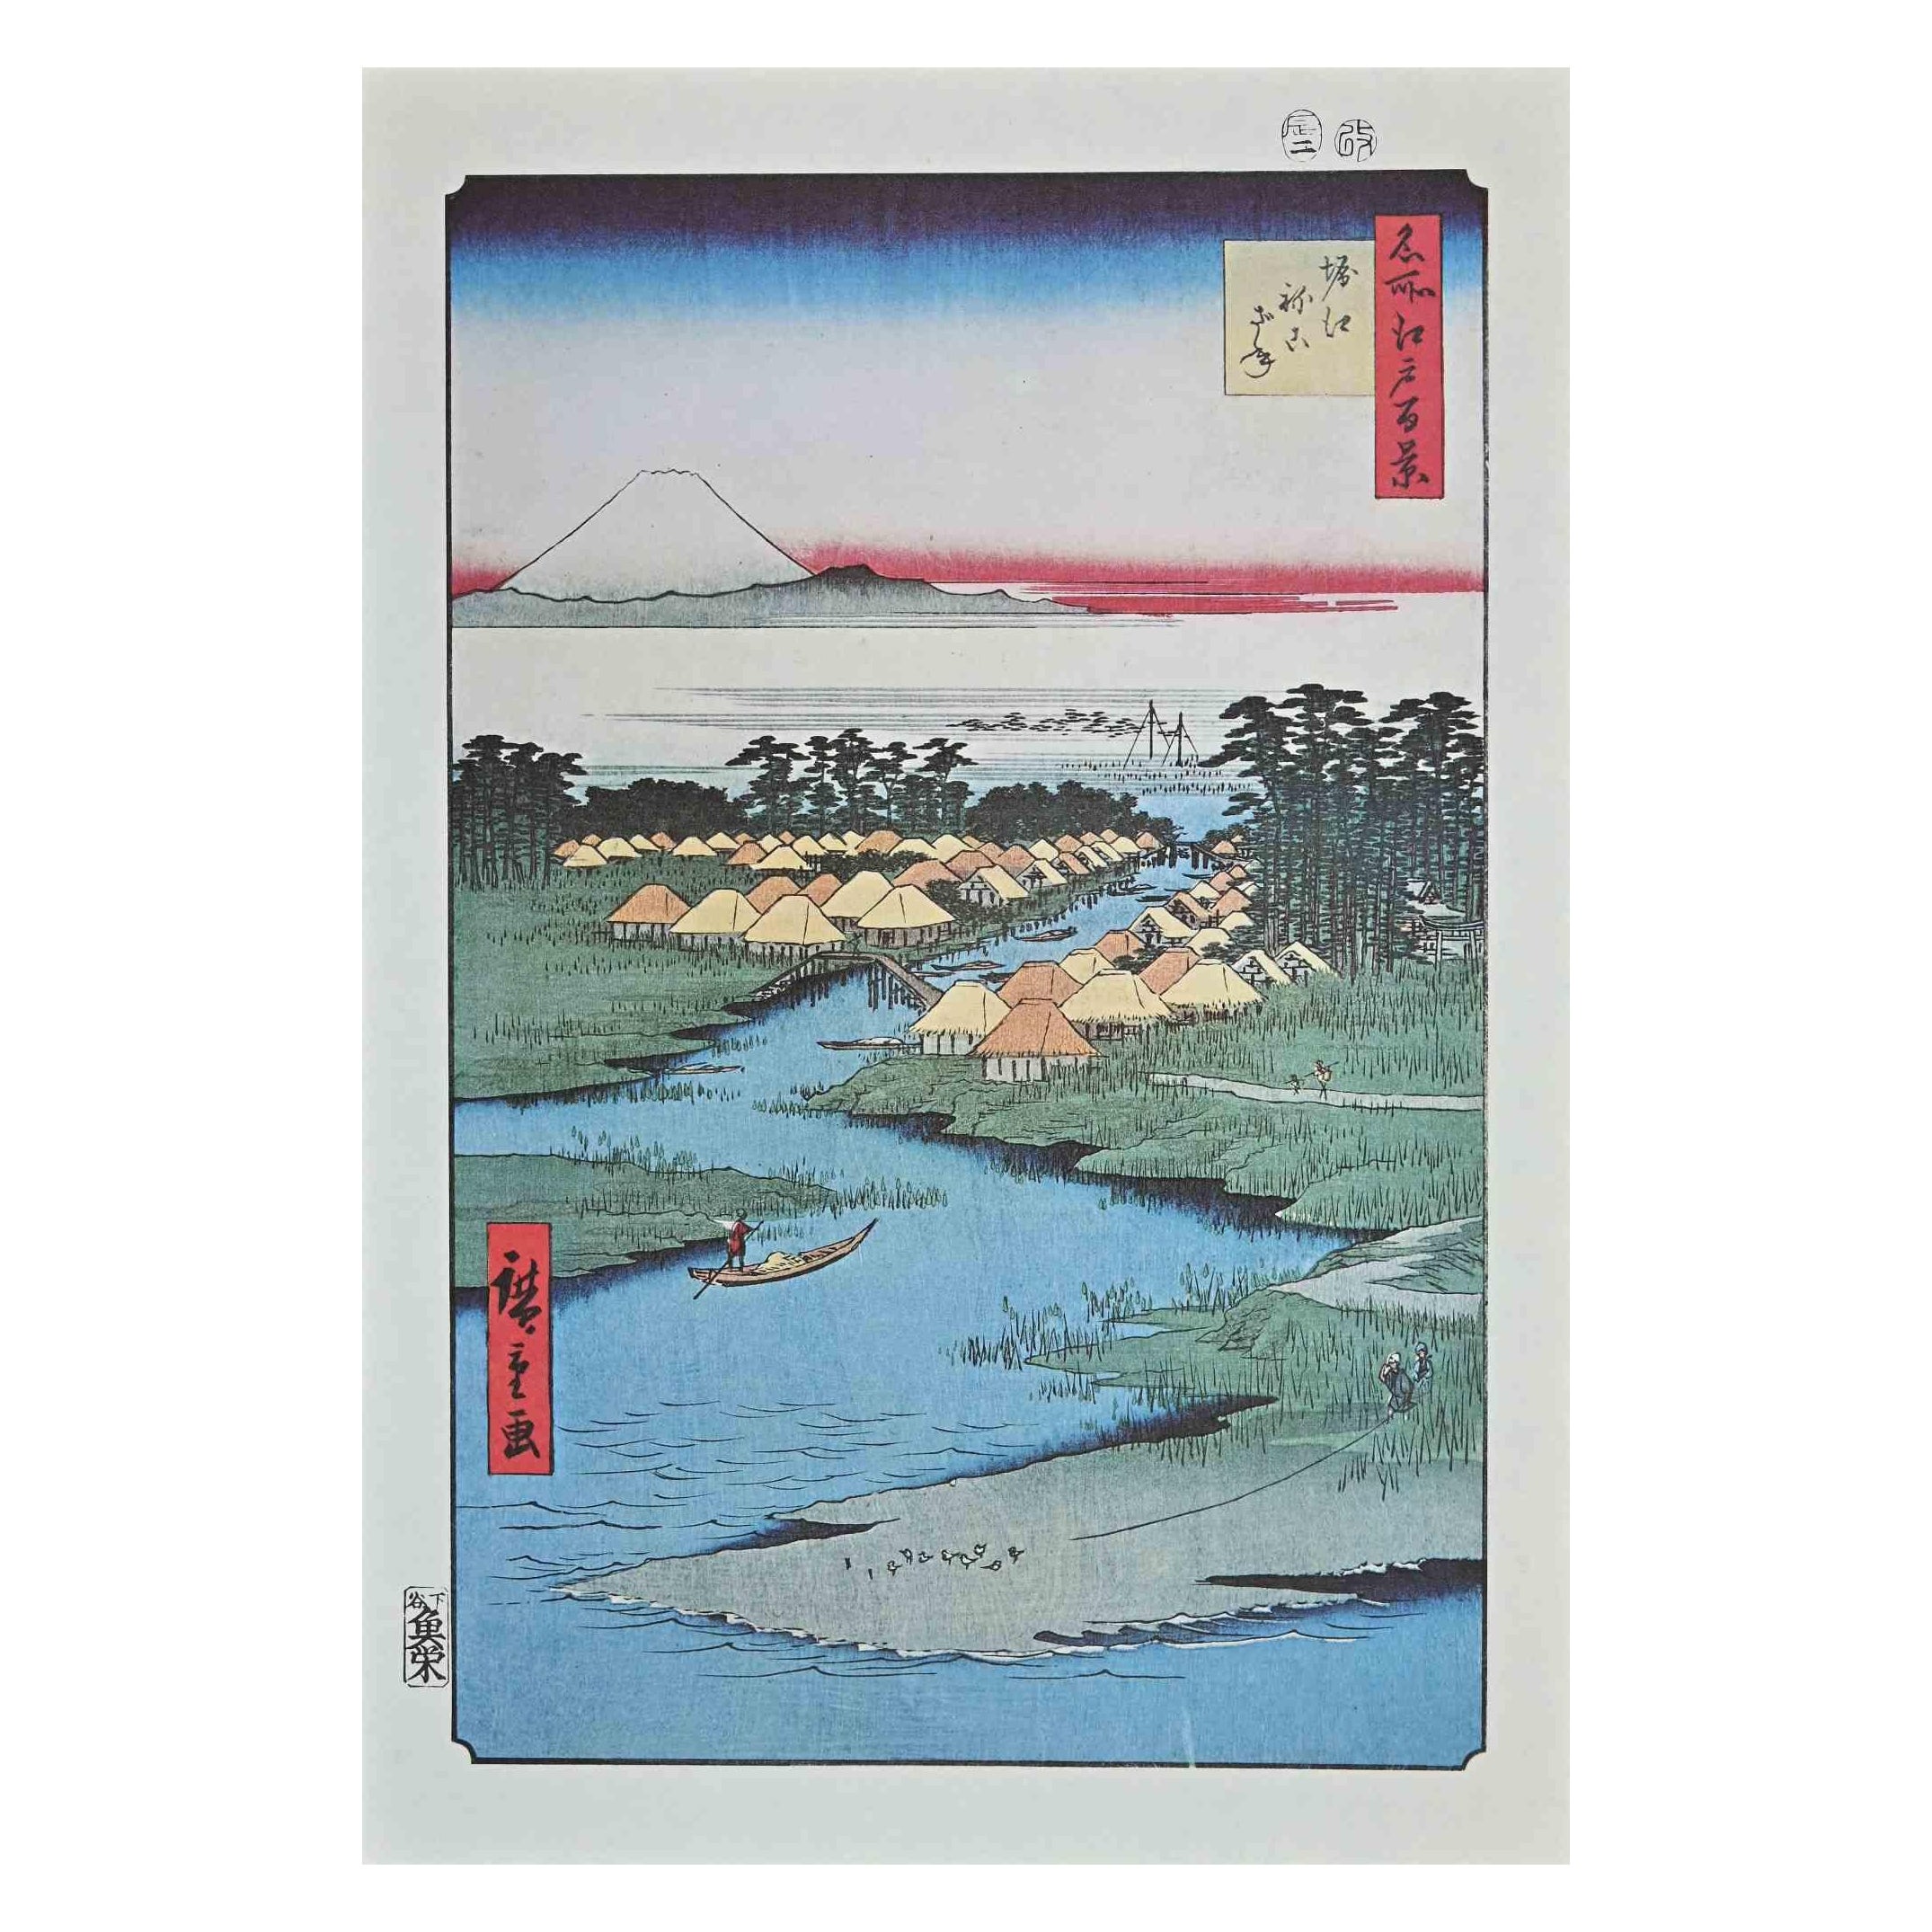 Utagawa Hiroshige Landscape Print - Japanese Houses on the Shore